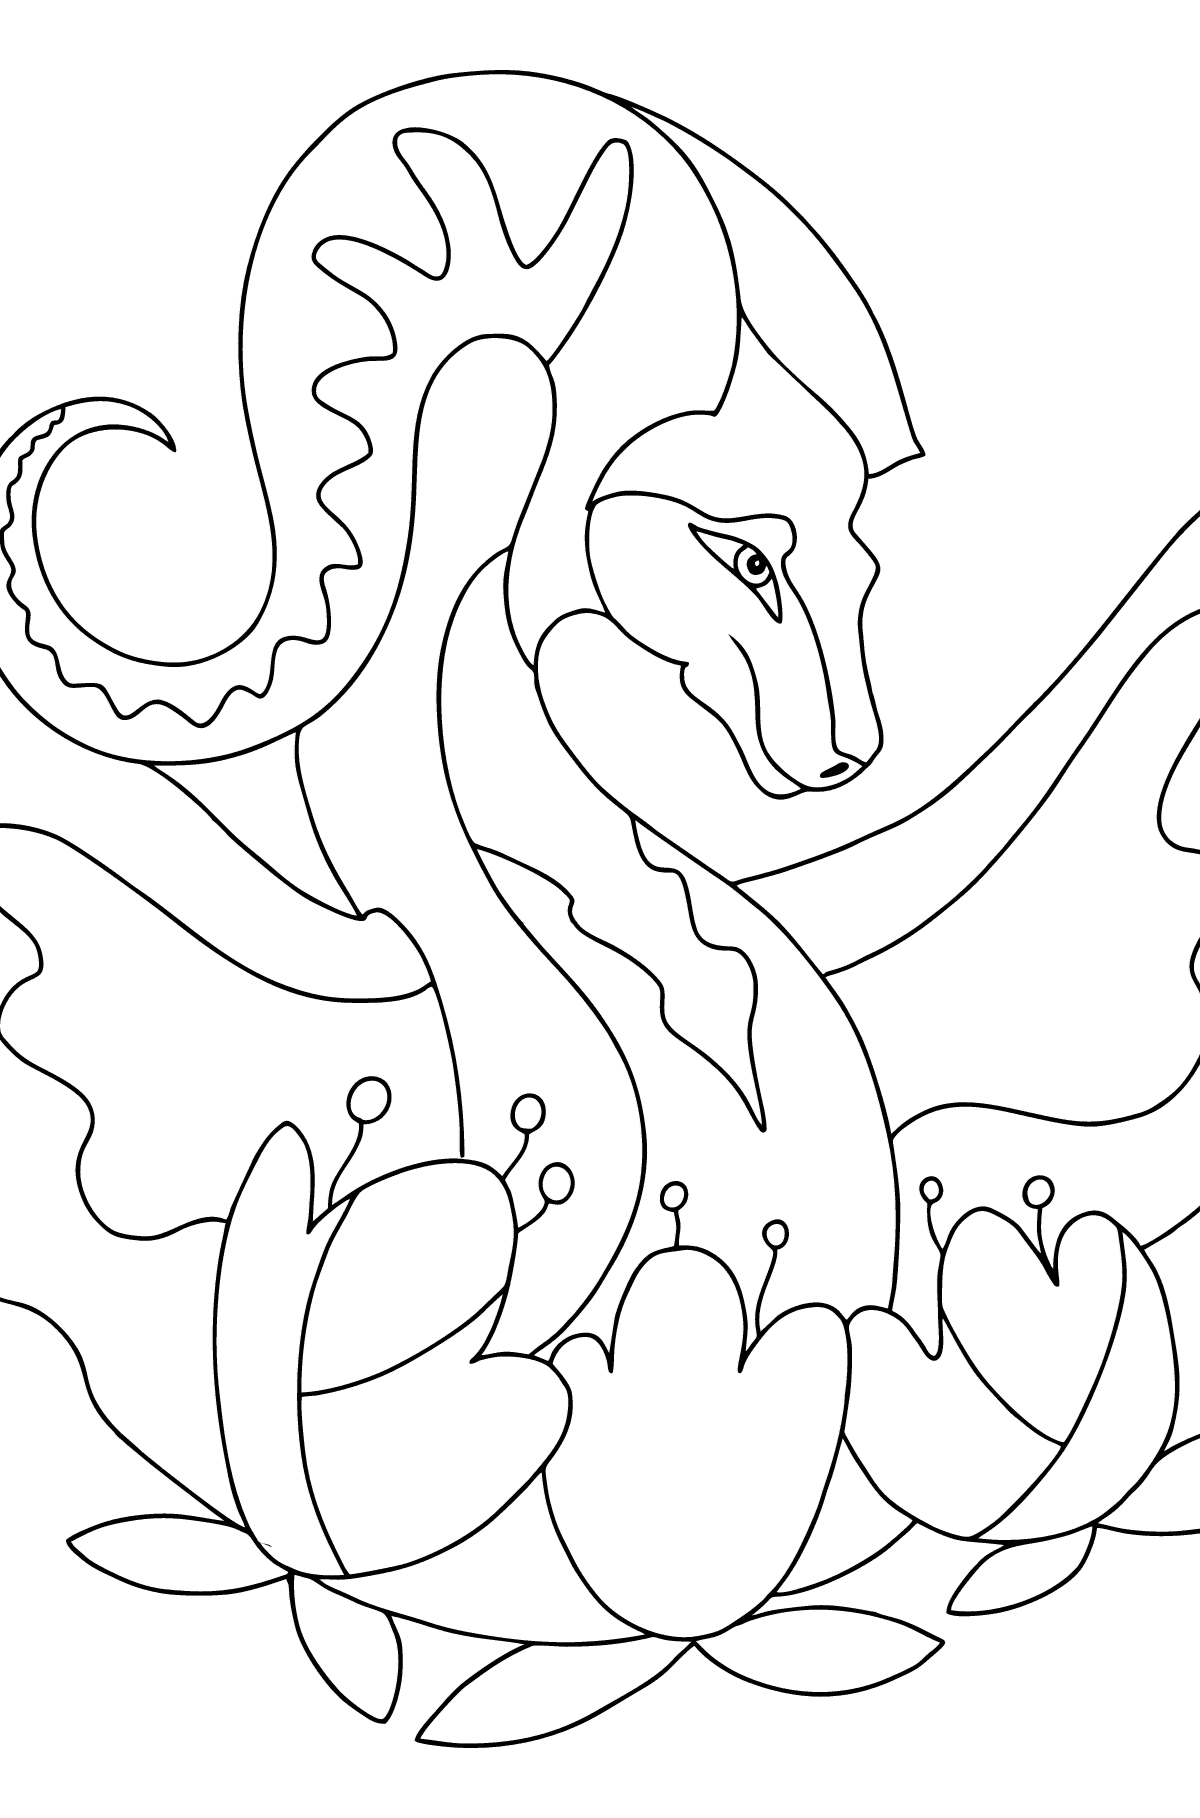 Dibujo para colorear dragón colorido (difícil) - Dibujos para Colorear para Niños